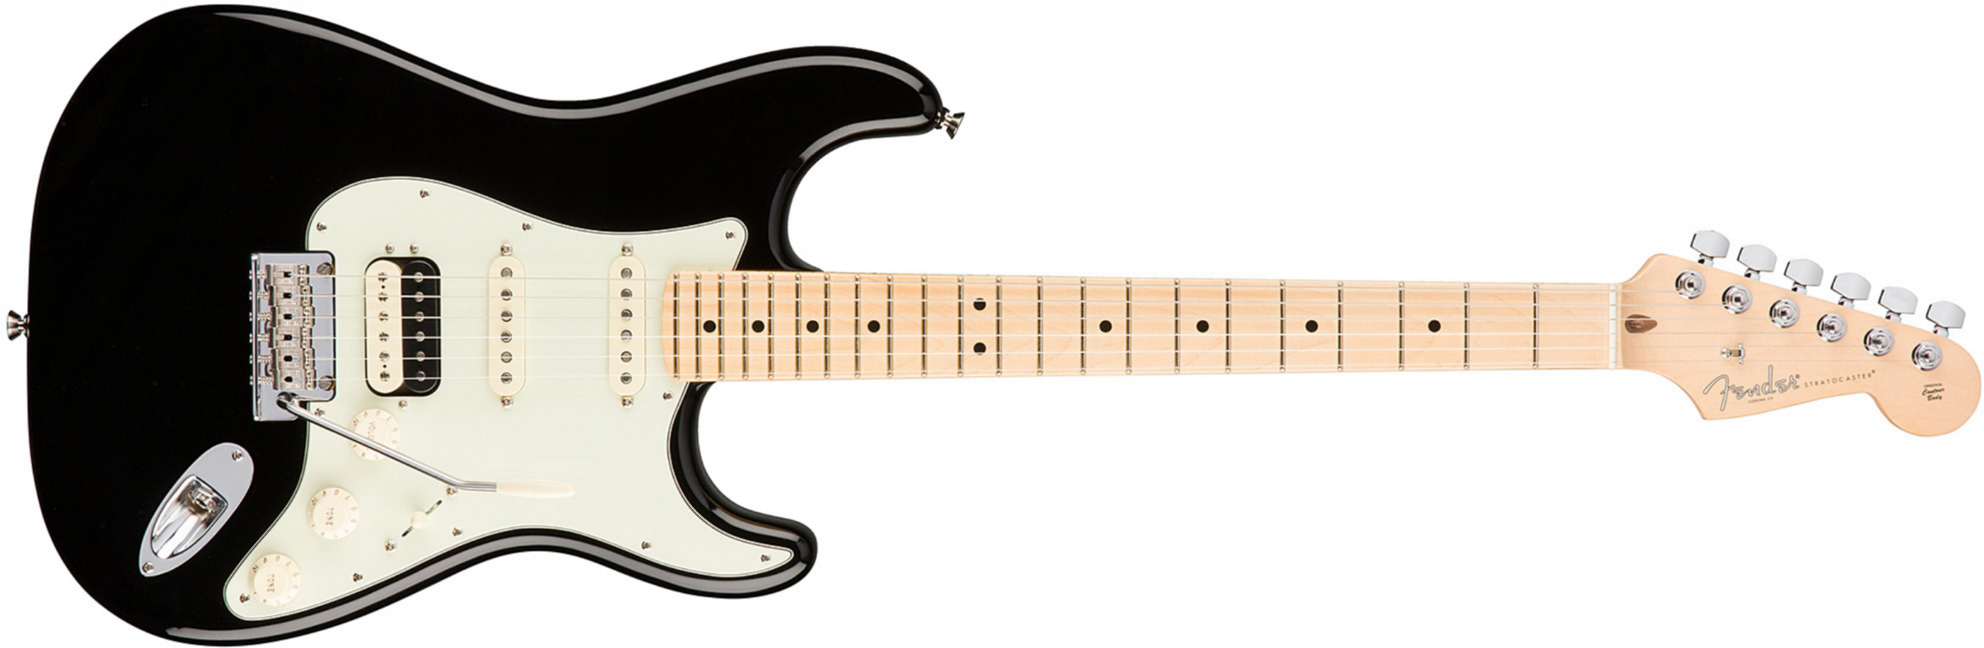 Fender Strat Hss Shawbucker American Professional Usa Mn - Black - Elektrische gitaar in Str-vorm - Main picture